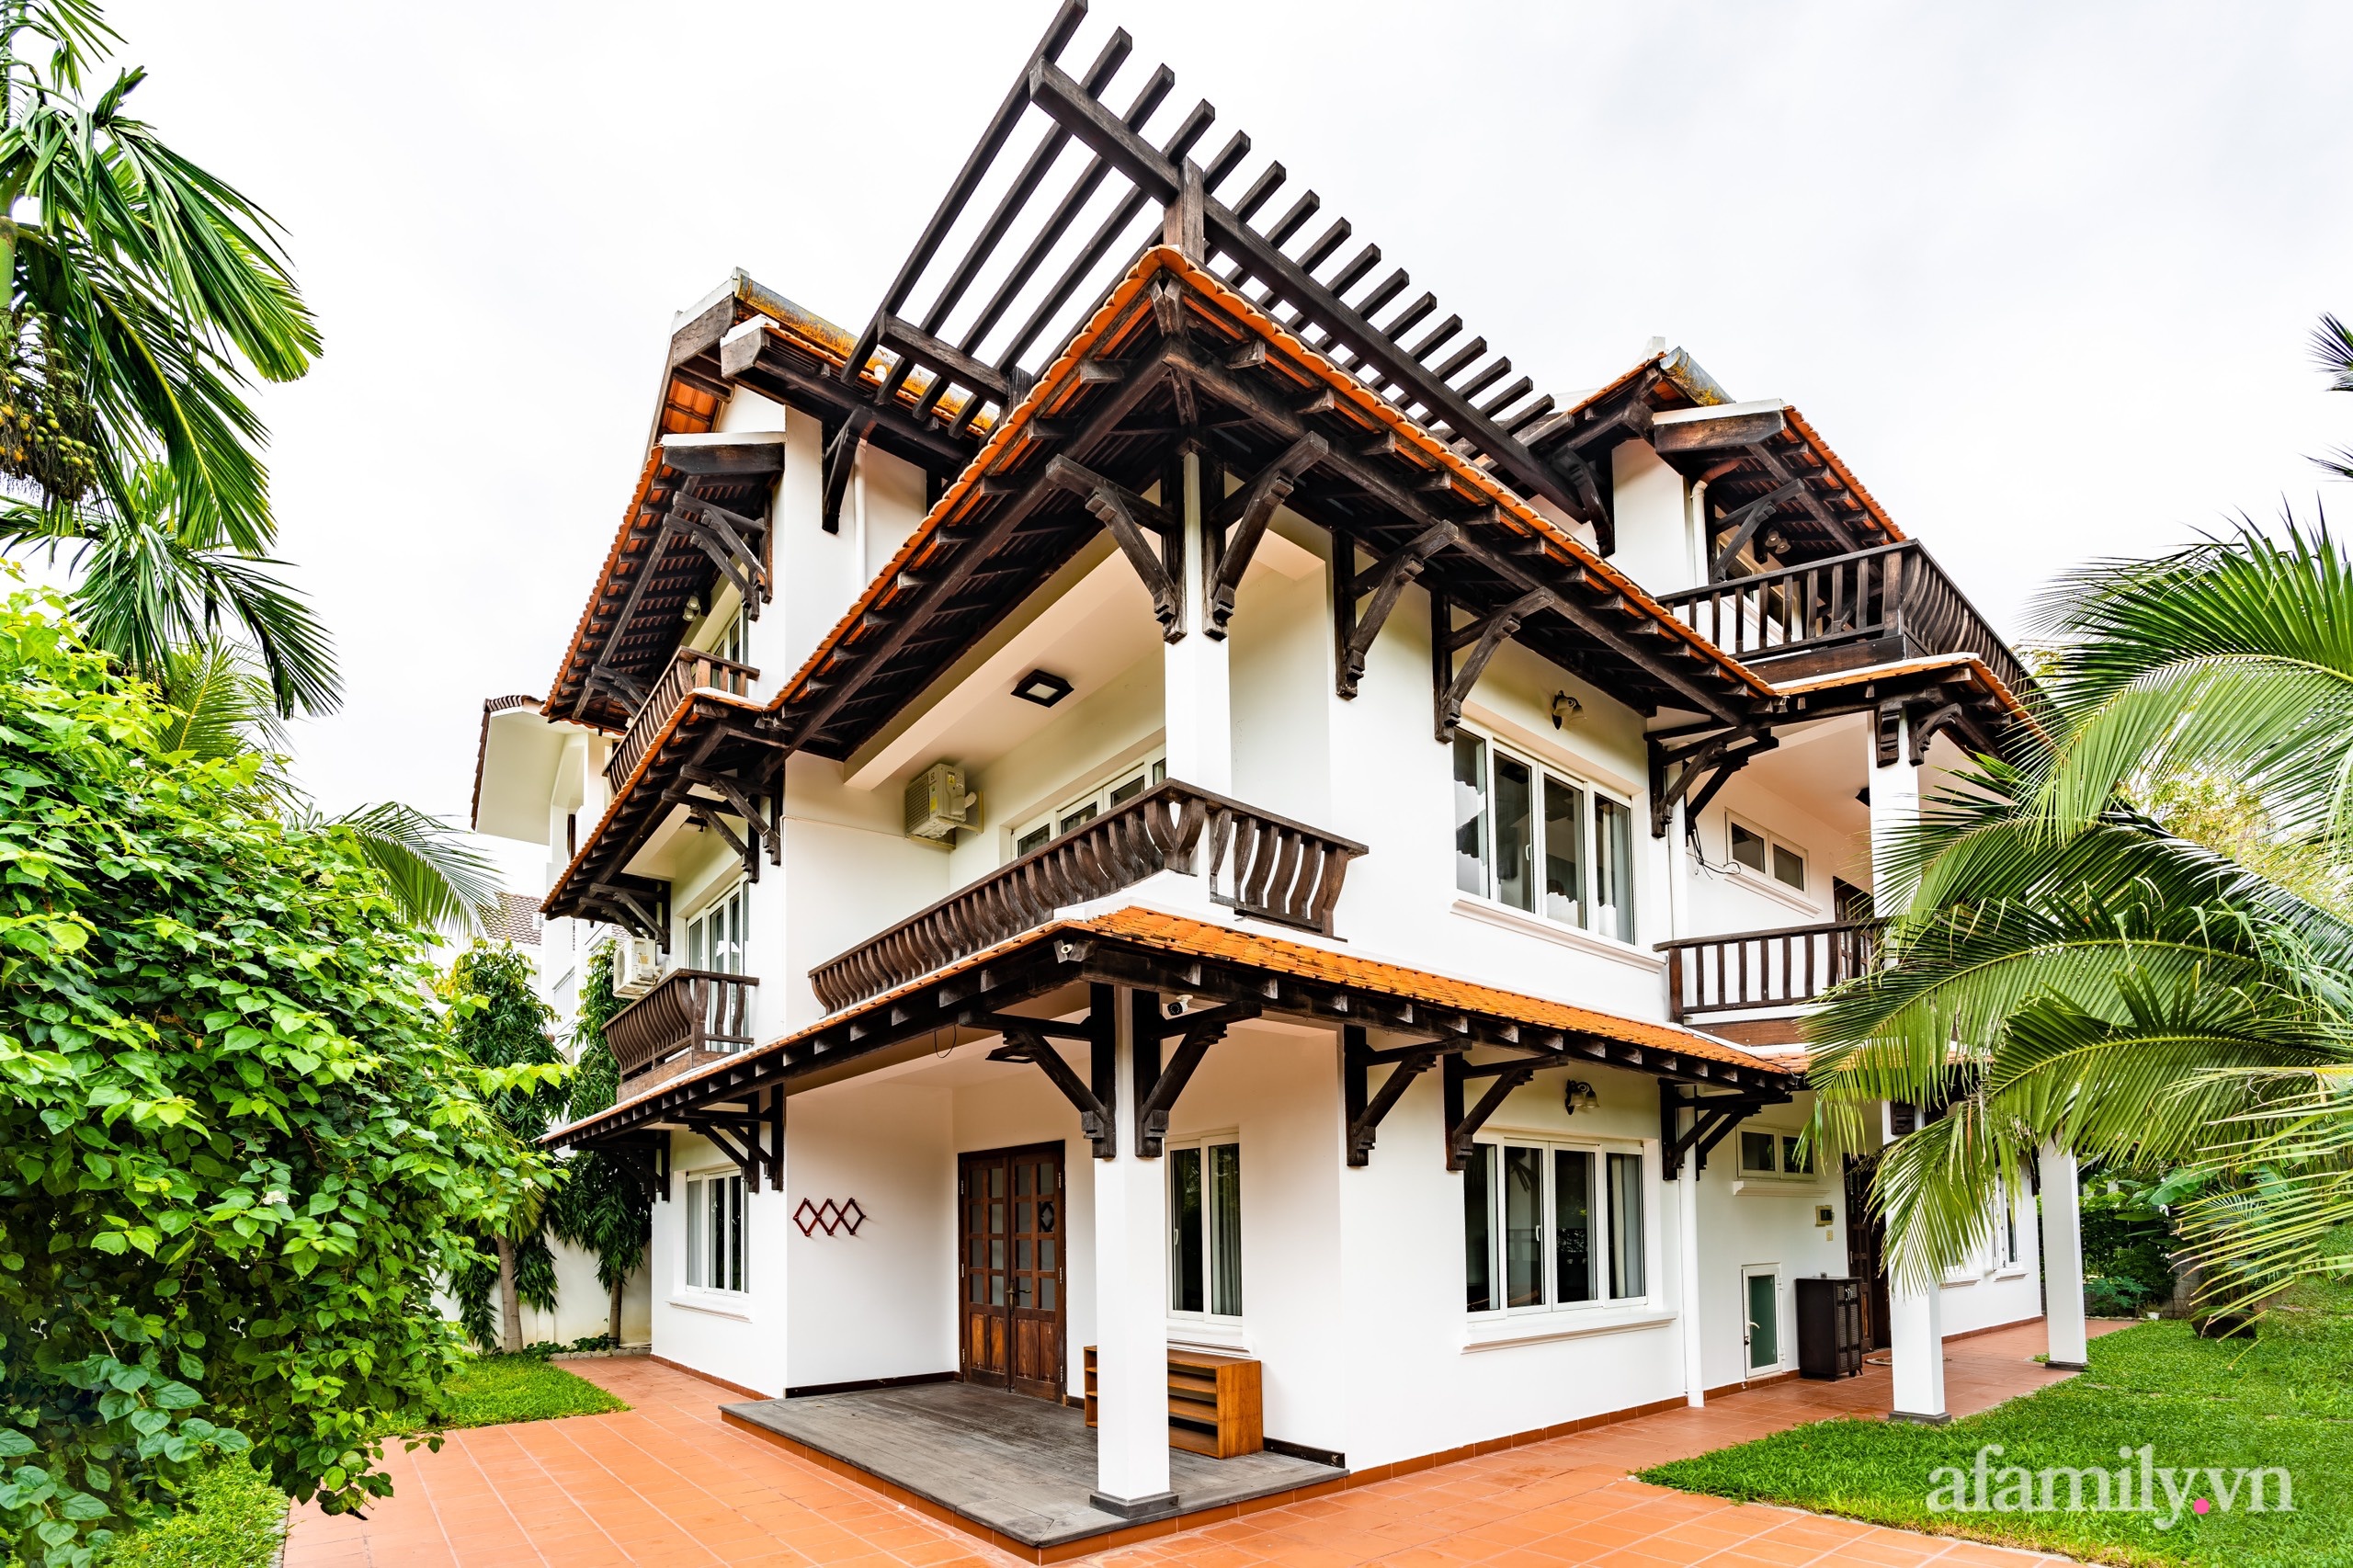 Căn nhà vườn xây 10 năm vẫn đẹp hút mắt với nội thất gỗ và cây xanh quanh nhà ở Nha Trang-4